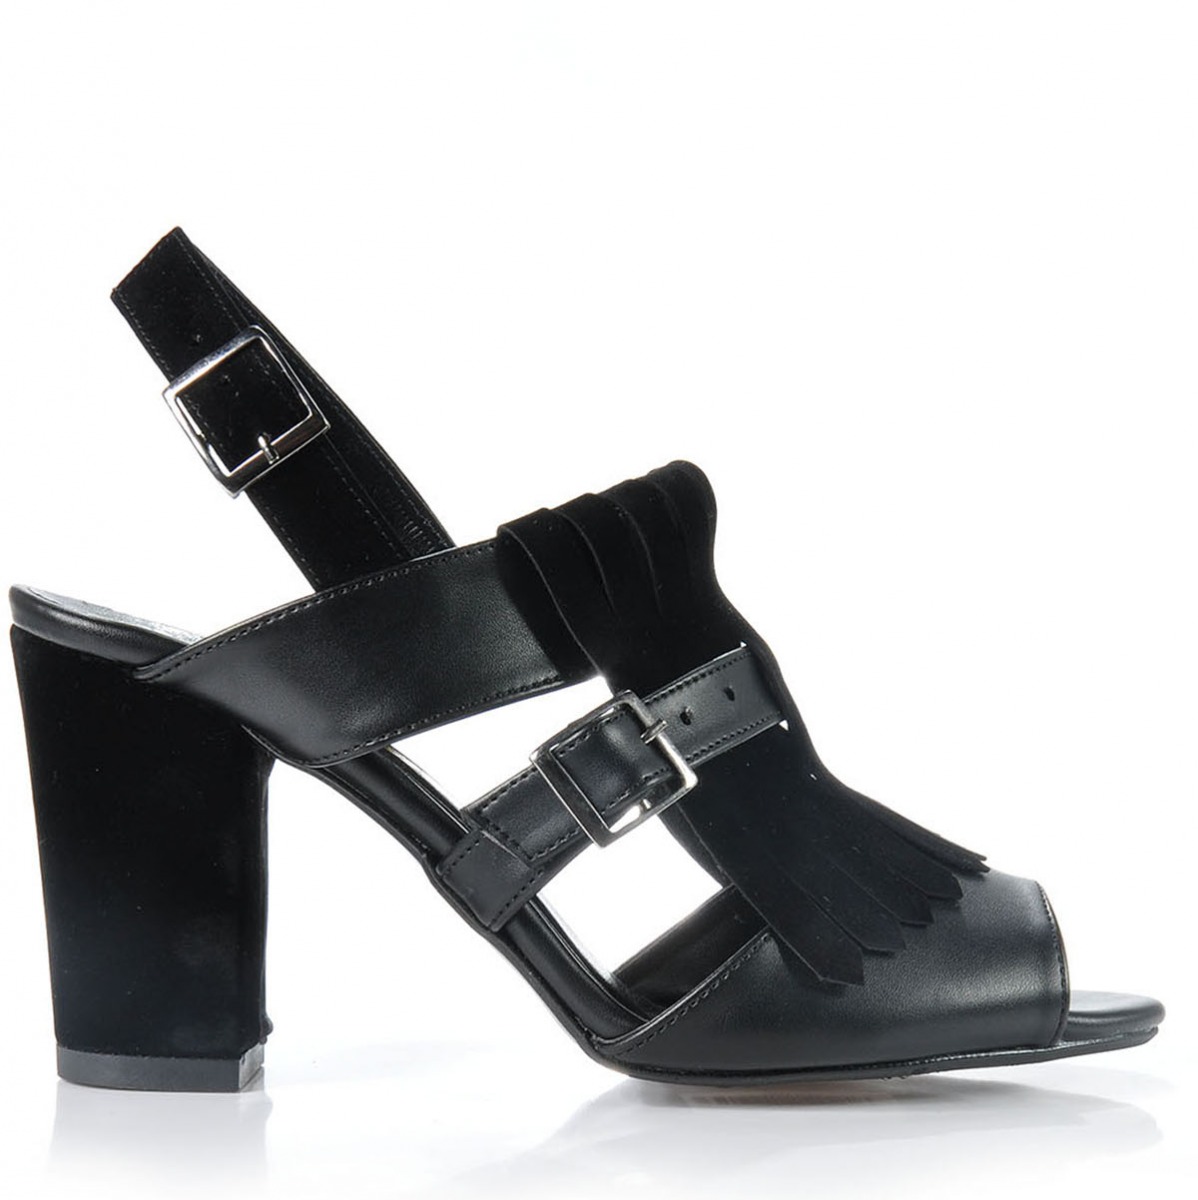 Flo Kadın  Siyah Klasik Topuklu Ayakkabı VZN-159Y. 3